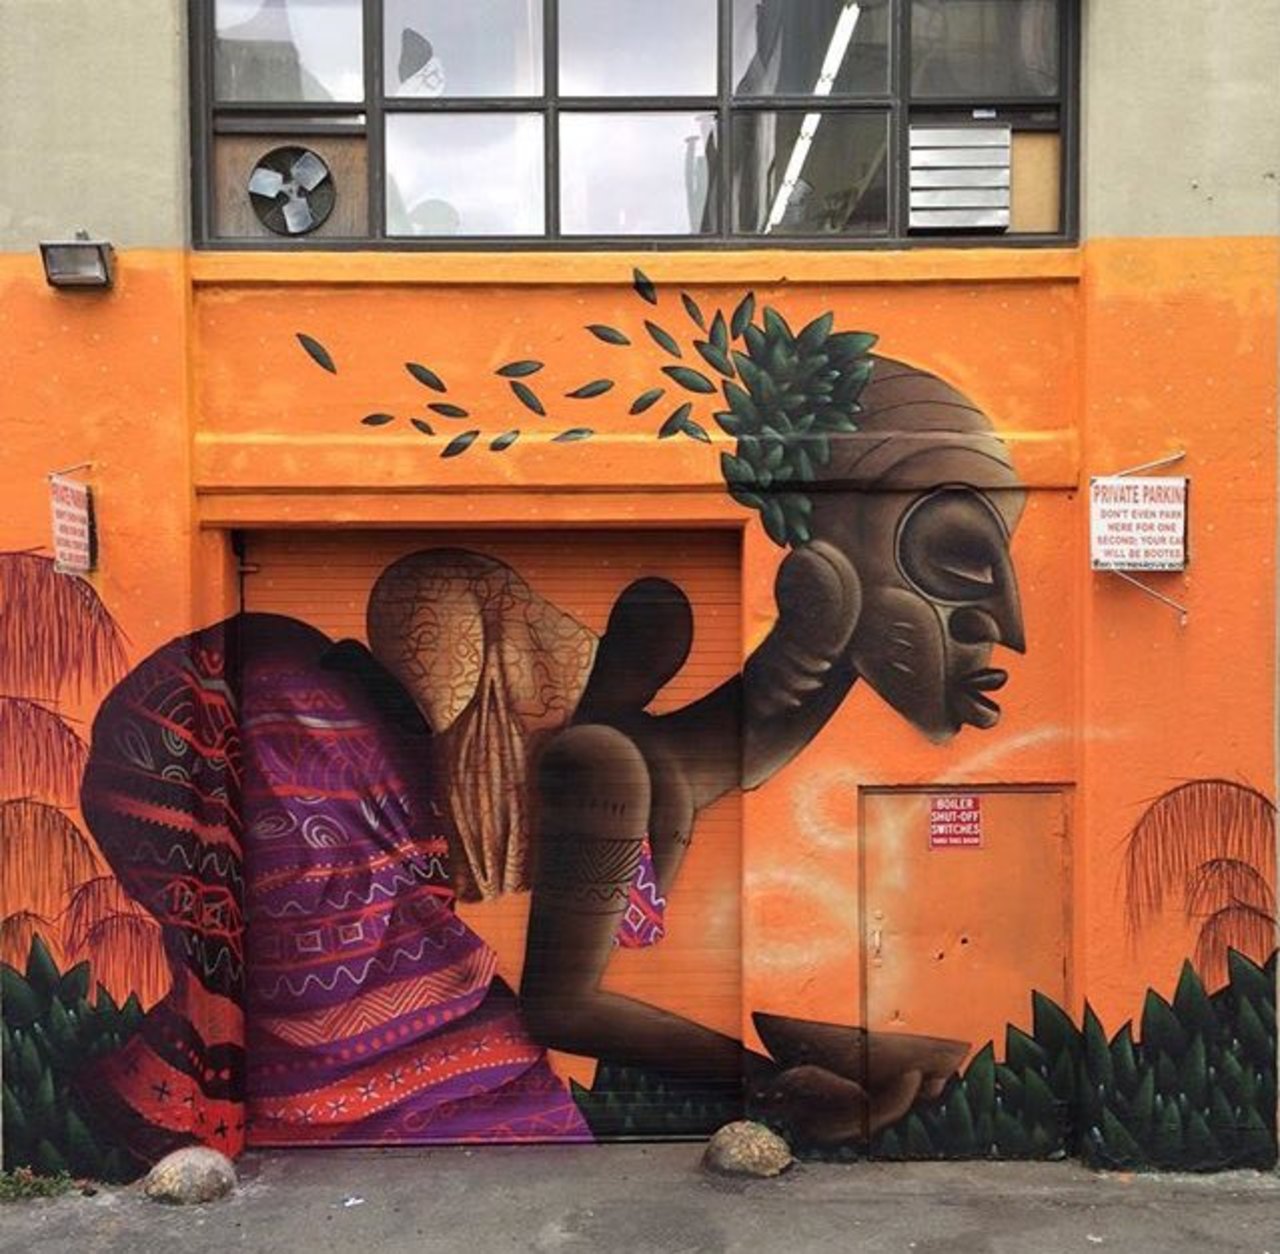 New Street Art by Alexandre Keto in NYC 

#art #graffiti #mural #streetart https://t.co/qcrbG3bUPM